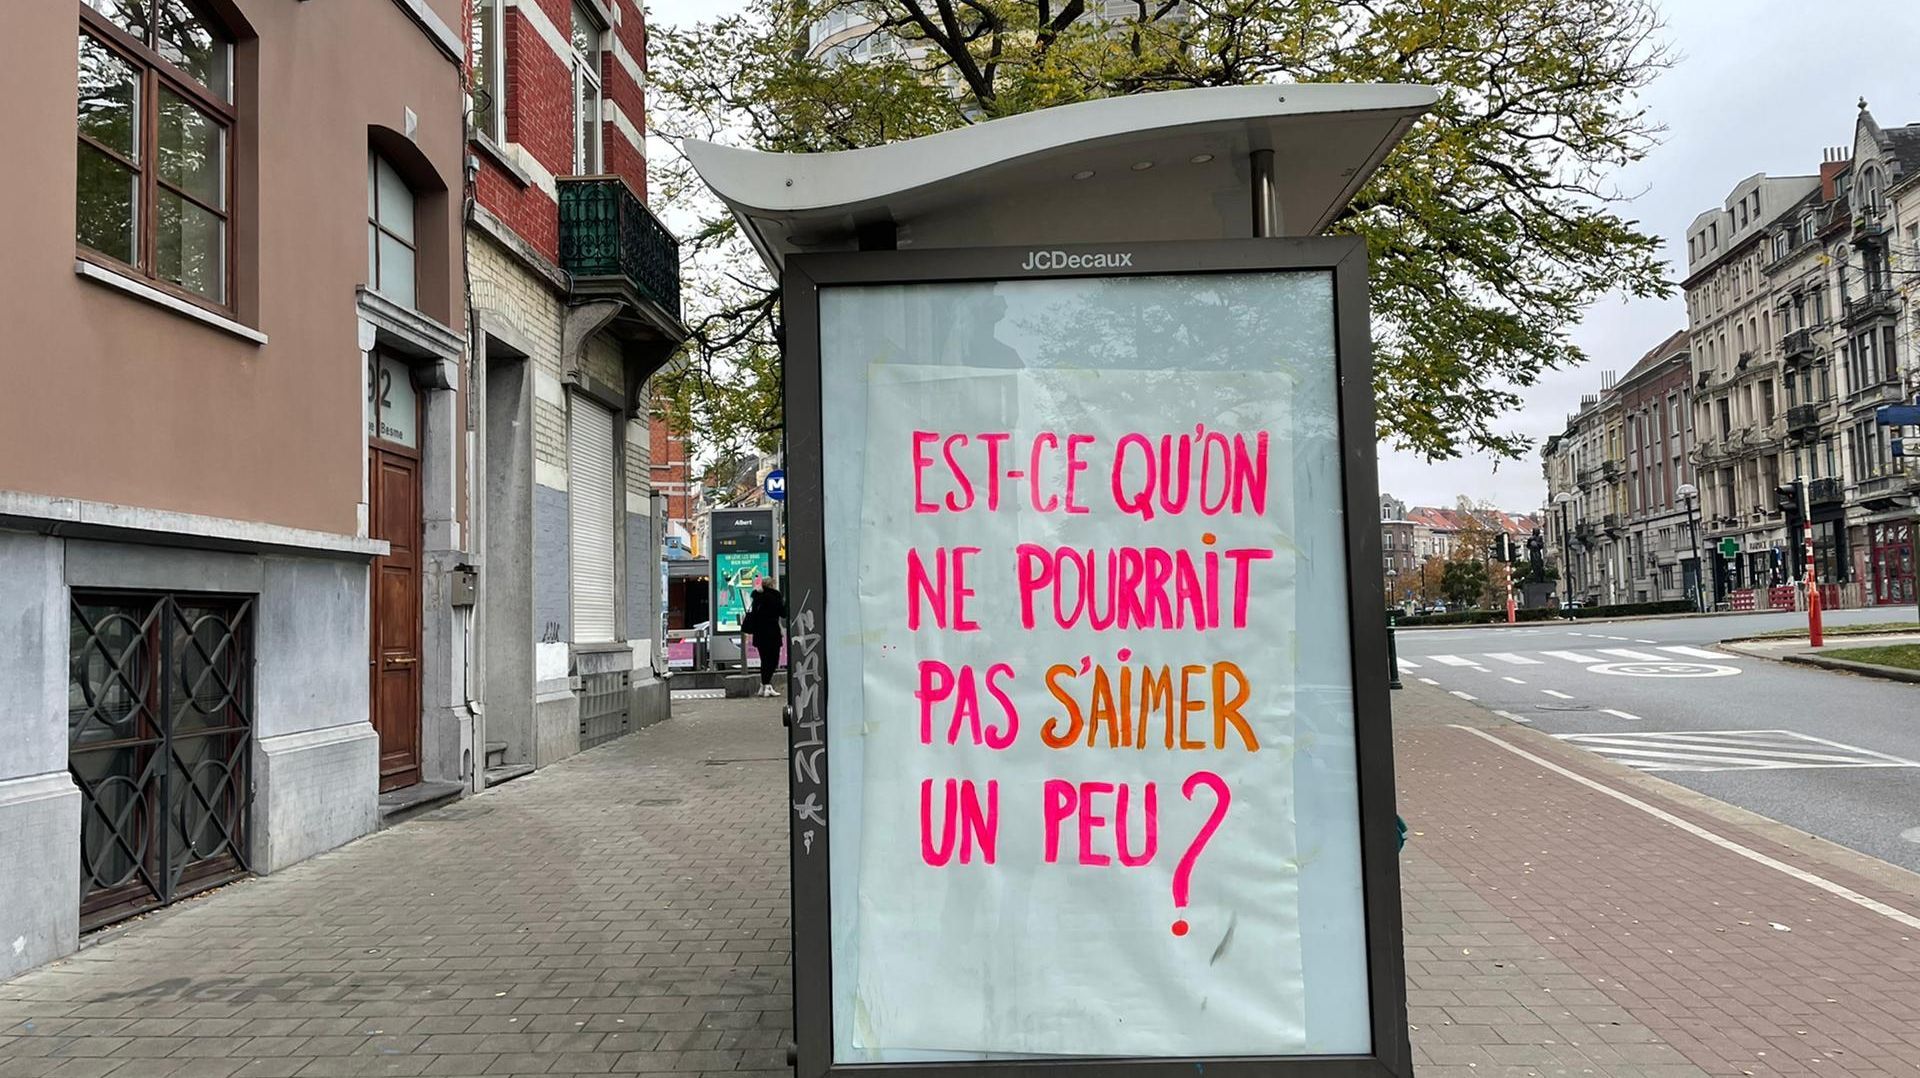 À l’image de ce message, plusieurs panneaux publicitaires ont été détournés pour les ZAP GAMES à Bruxelles